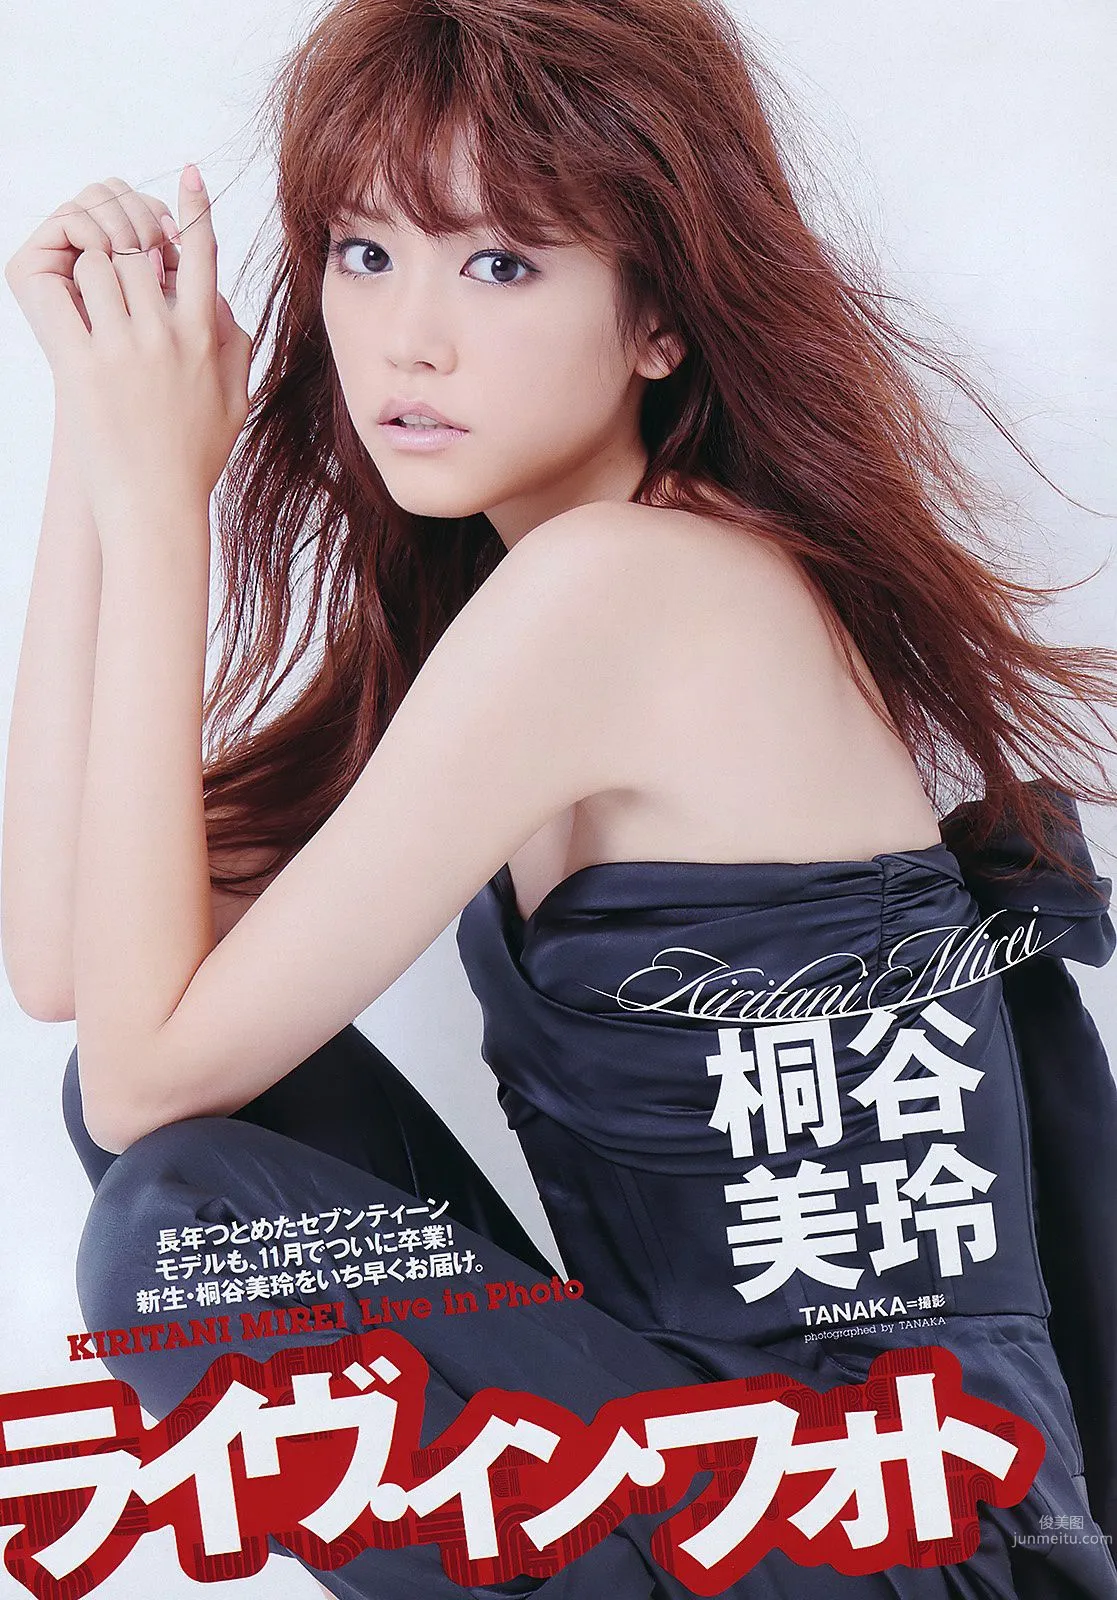 桐谷美玲 仁藤みさき 高桥爱 青木爱 AKB48 池田夏希 [Weekly Playboy] 2011年No.38 写真杂志2